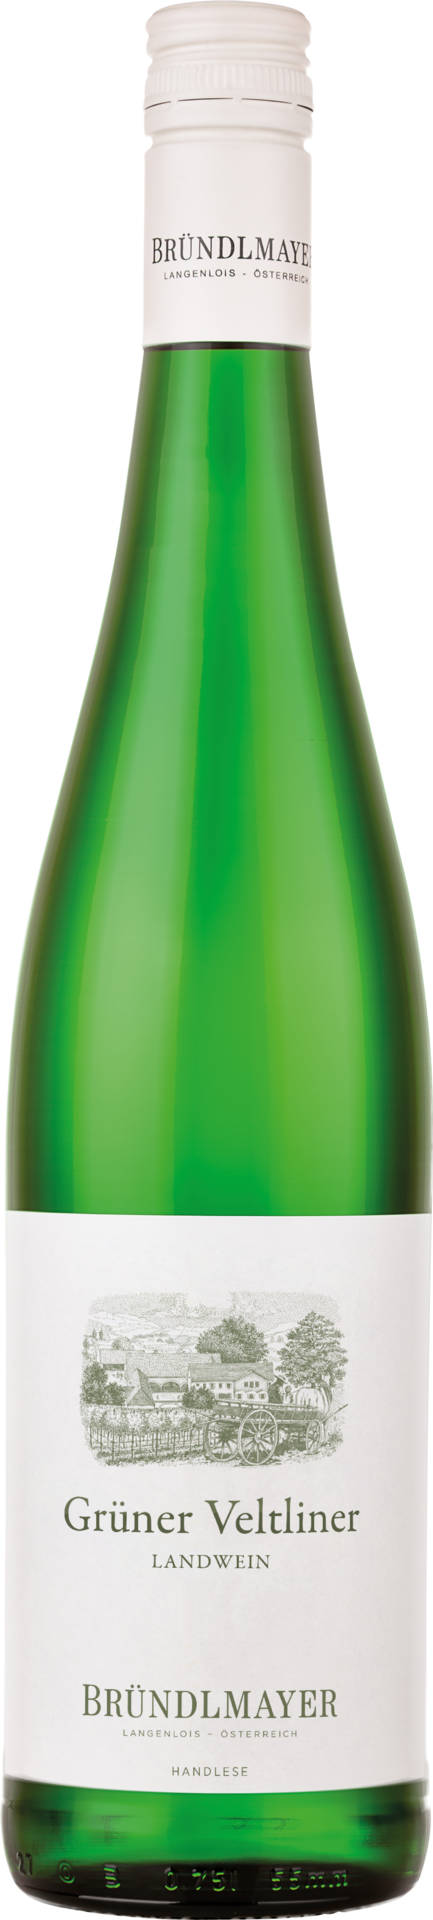 Bründlmayer Grüner Veltliner Landwein